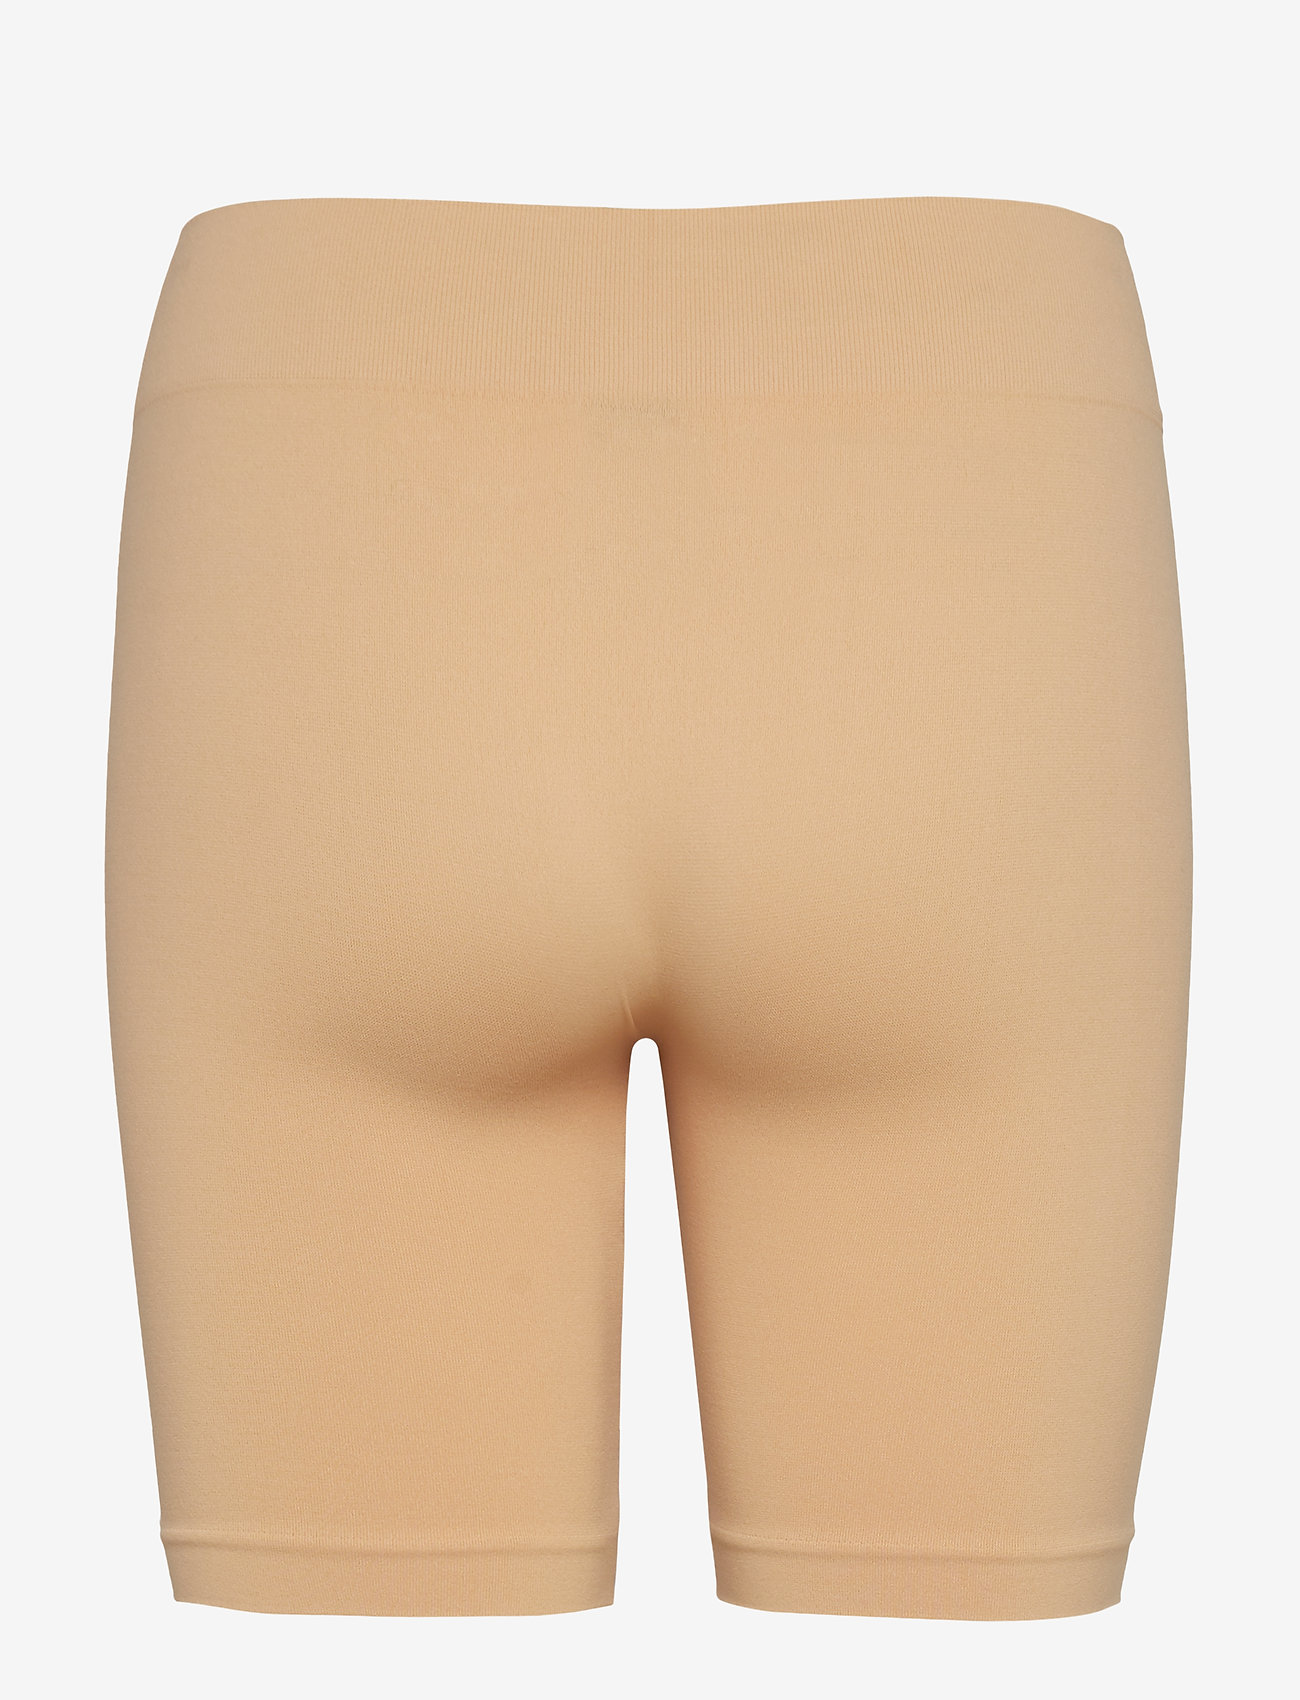 Decoy - DECOY seamless shorts - seamless panties - nude - 1